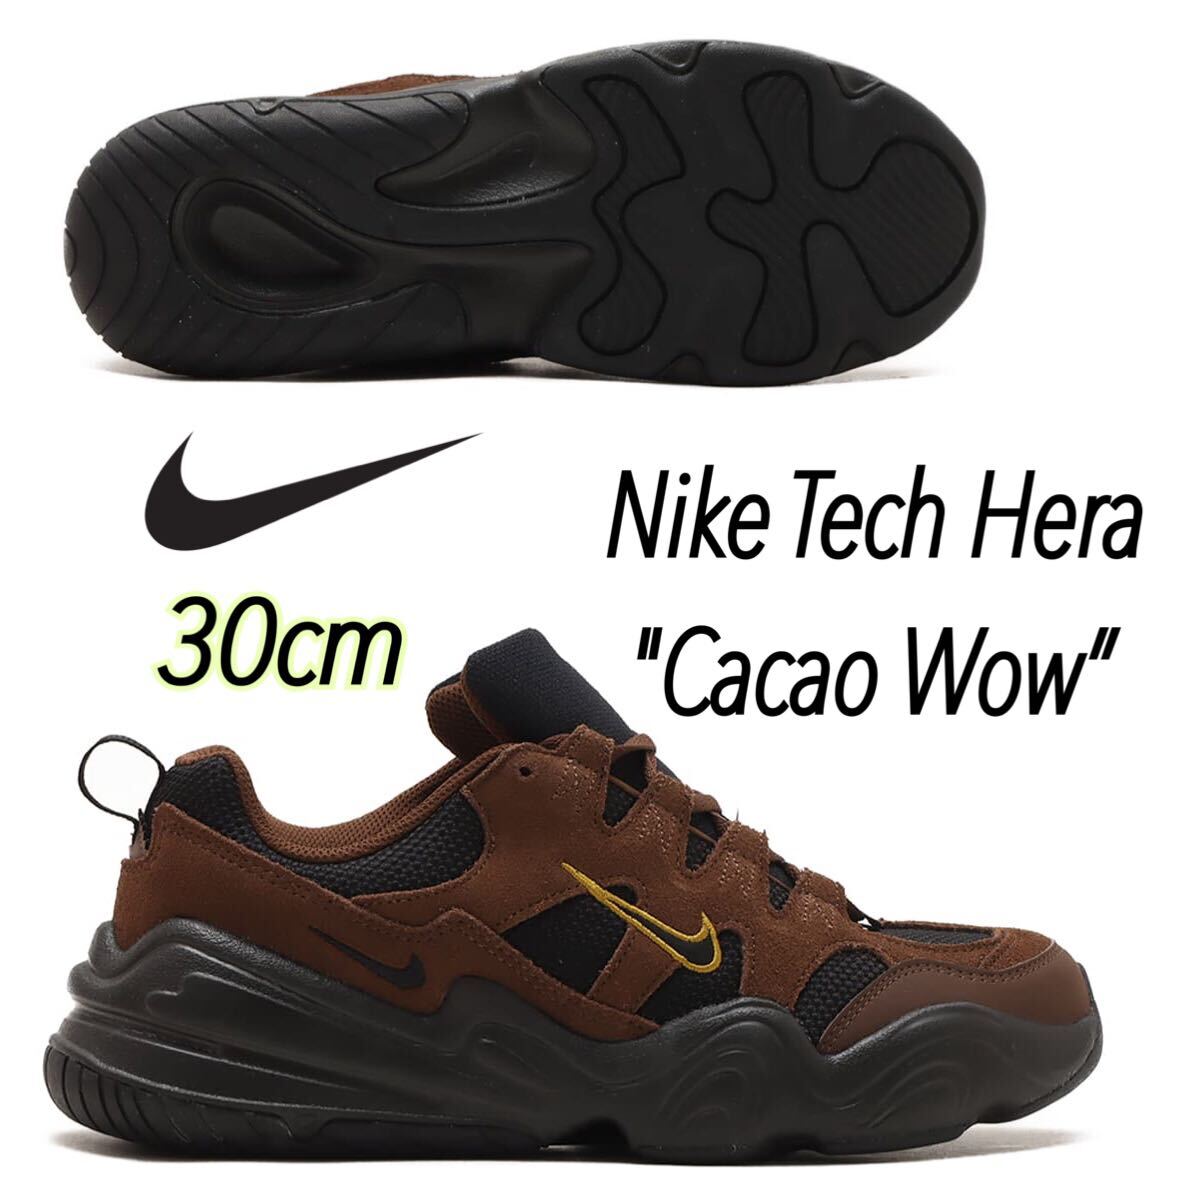 Nike Tech Hera Cacao Wow”ナイキ テック ヘラ カカオワオ/ブロンジーン/ブラック（FJ9532-200）ブラウン30cm箱あり_画像1